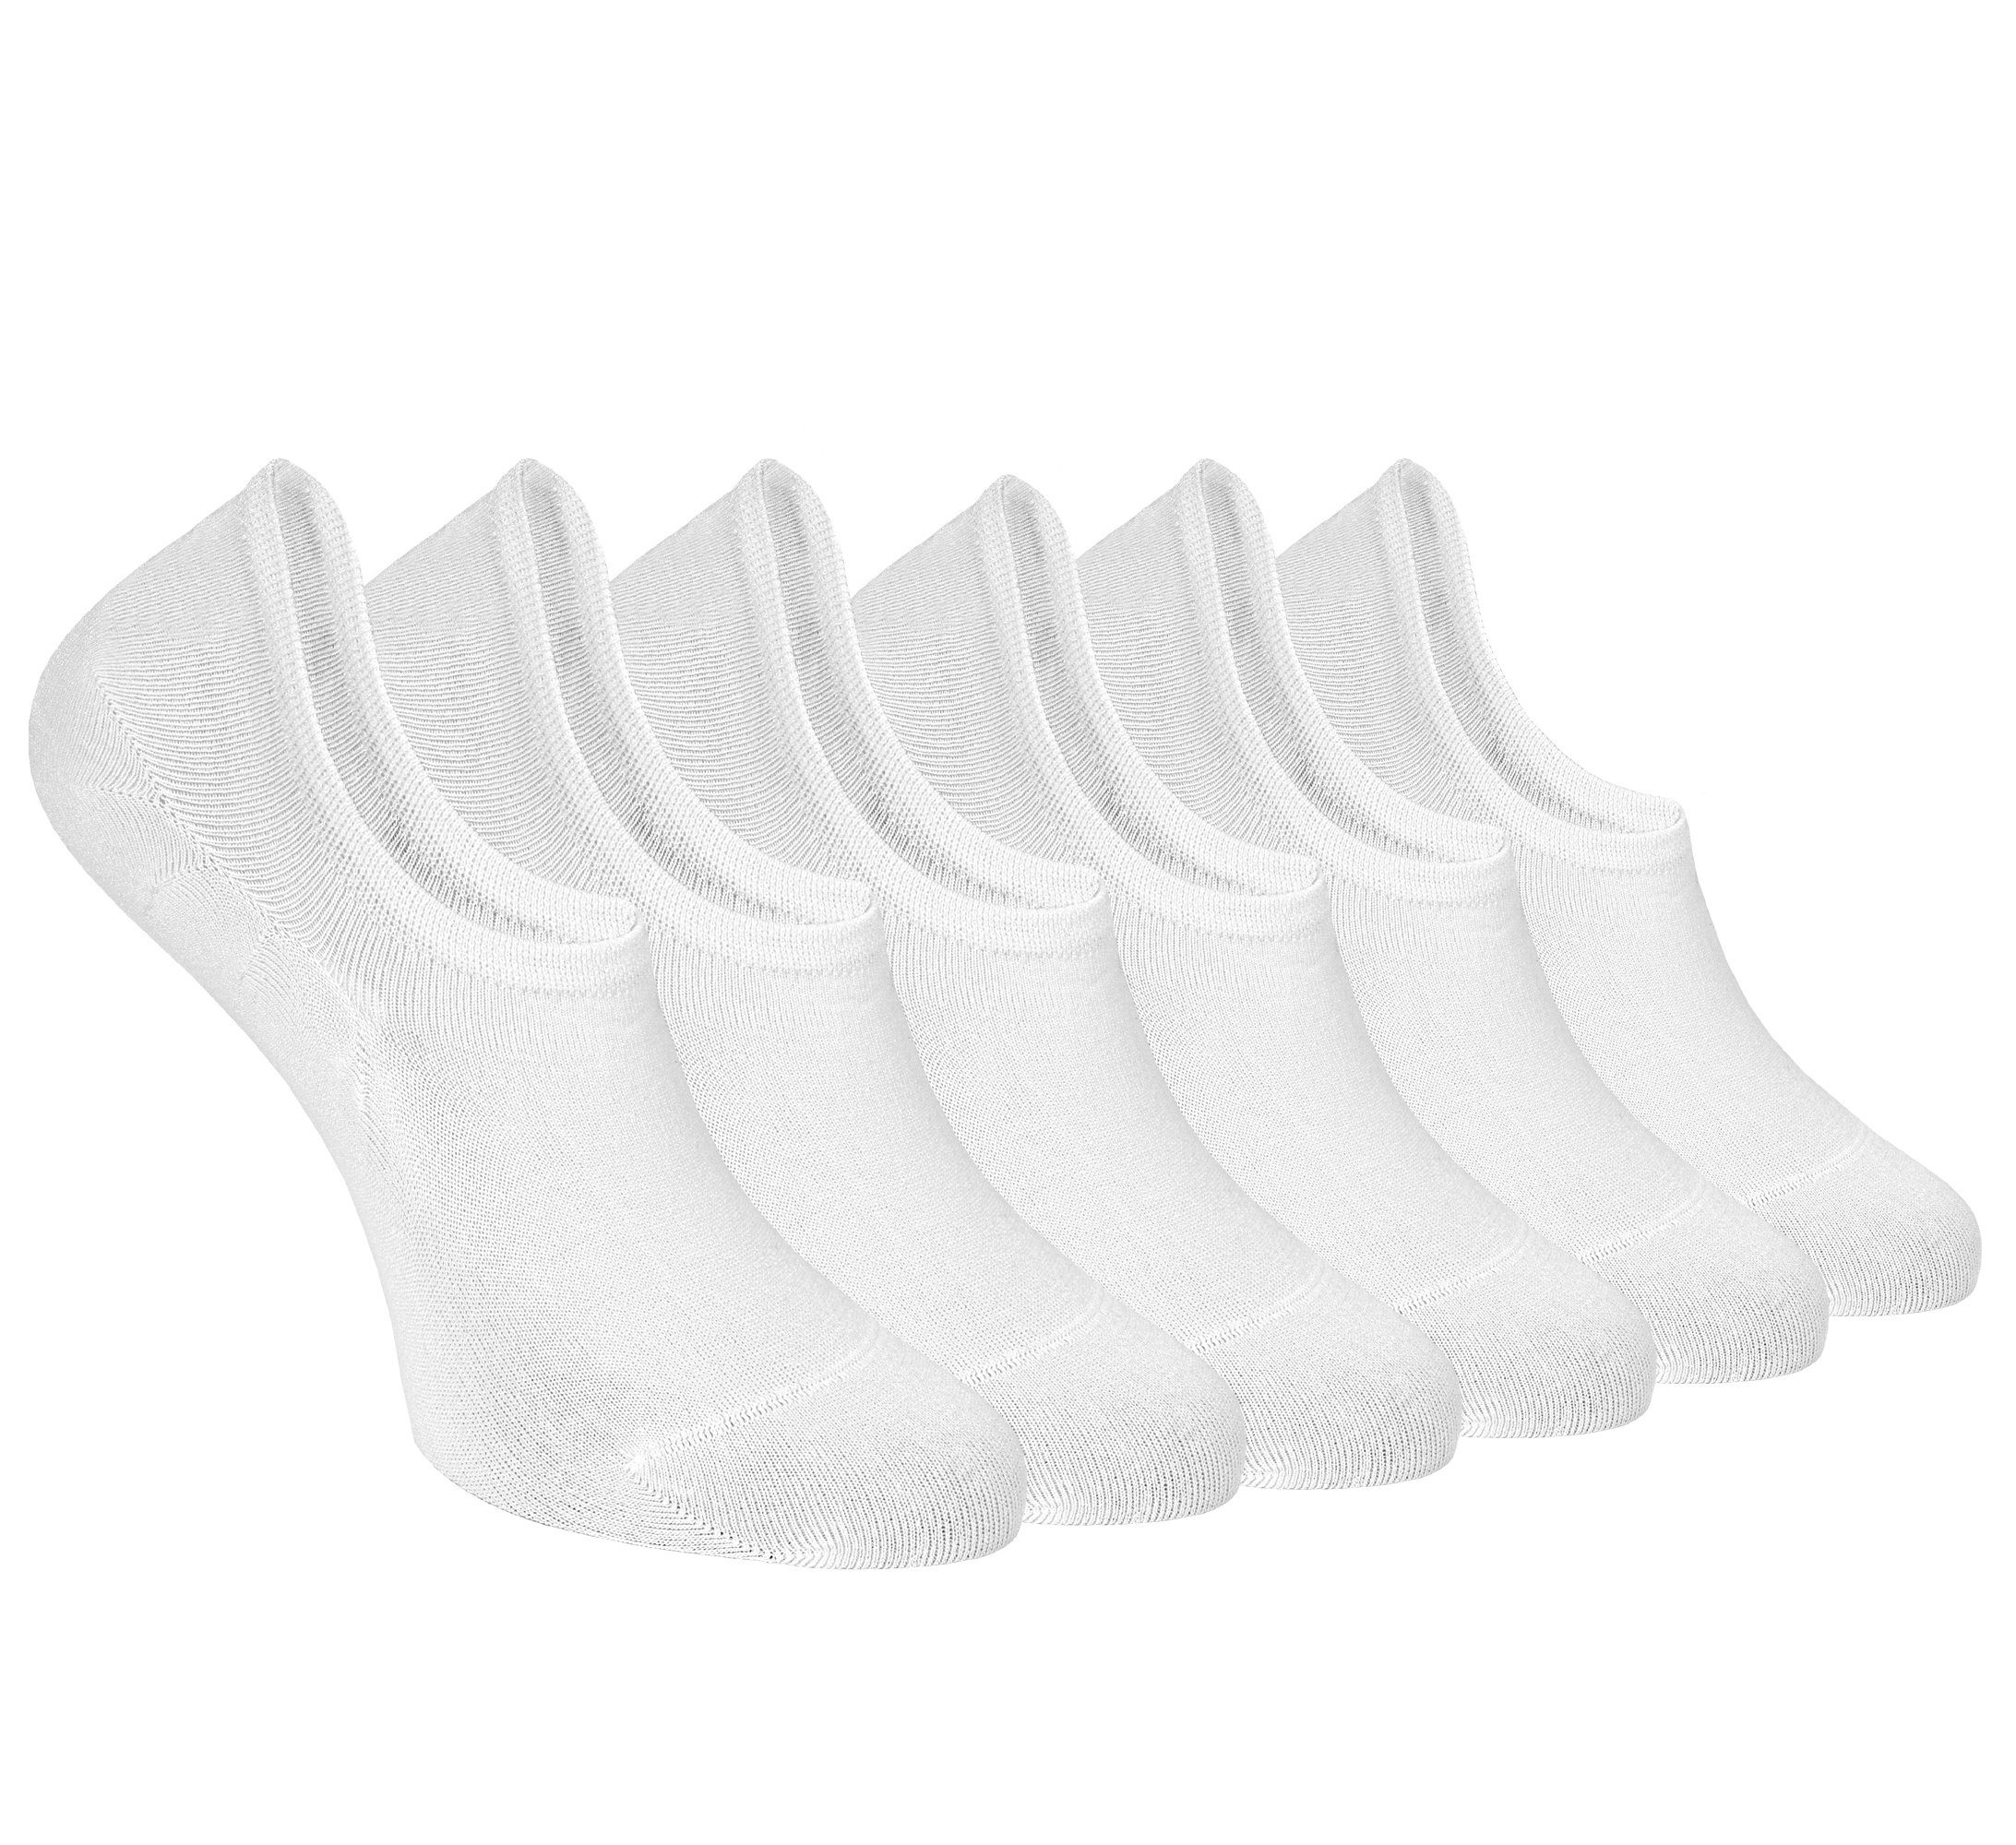 Socken Bambussocken Weiß Kurzsocken 6-Paar) (Box, NoblesBox No-Show